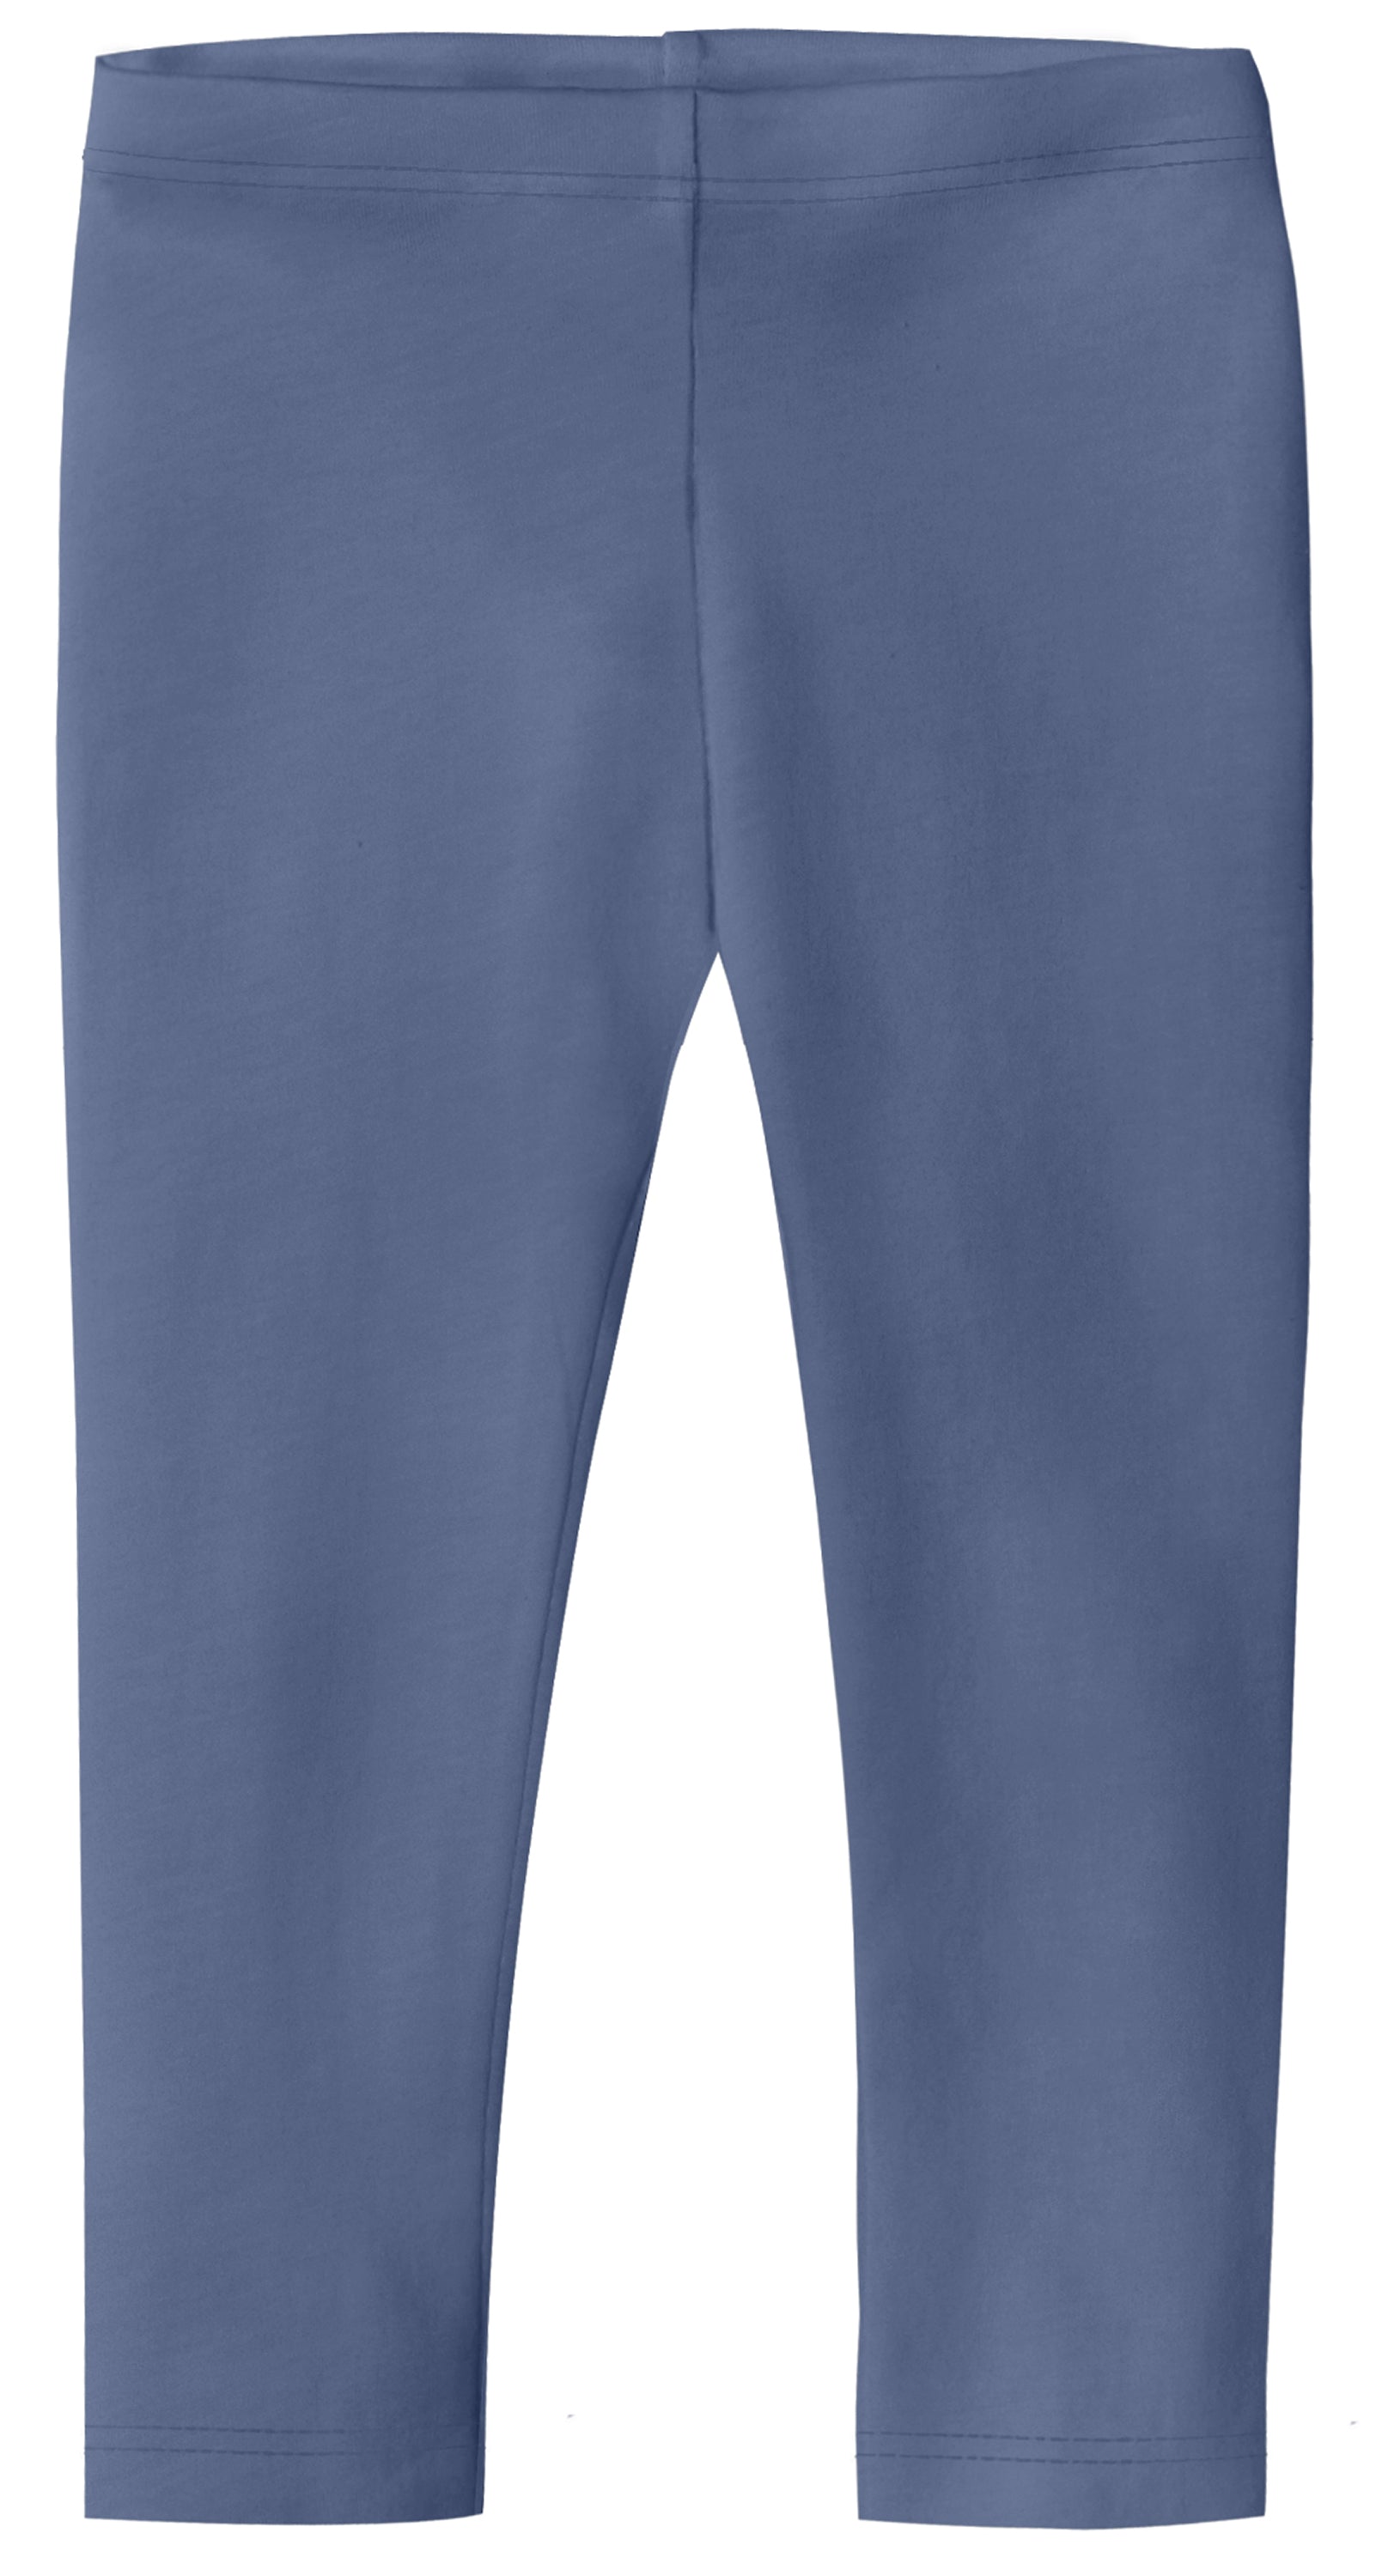 Girls Soft 100% Cotton Capri Leggings | Denim Blue